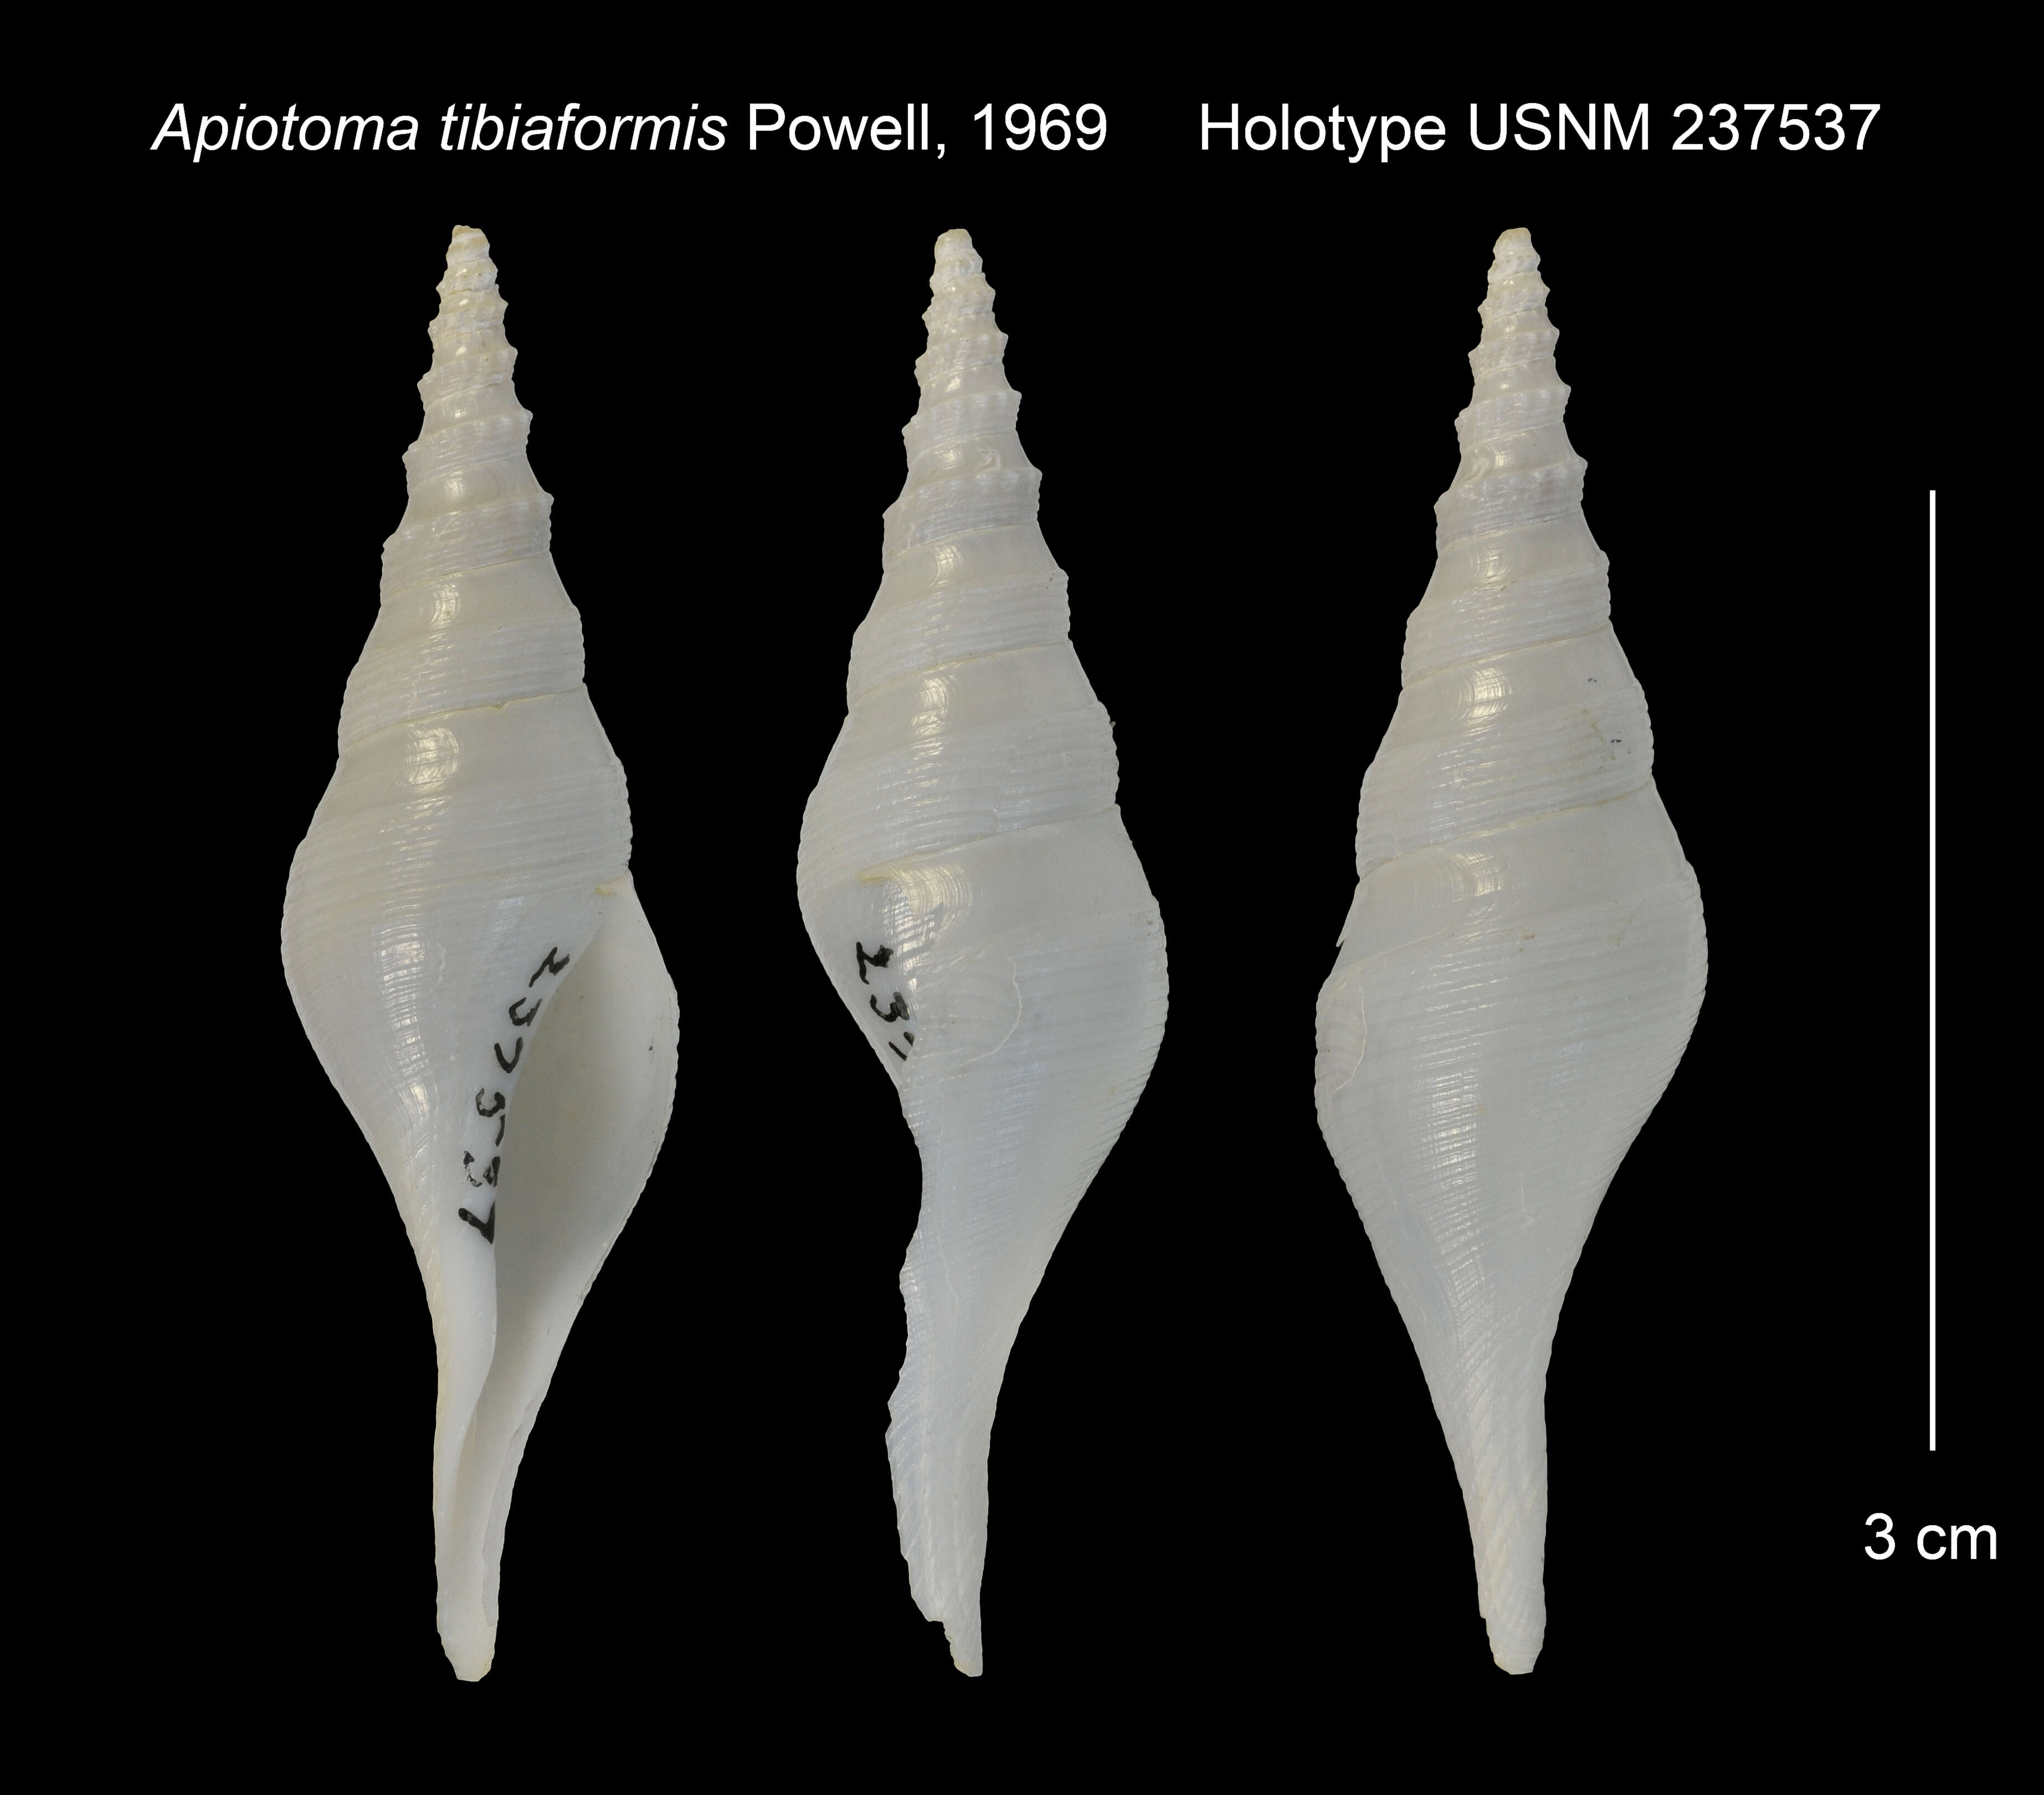 Image of Apiotoma tibiaformis Powell 1969